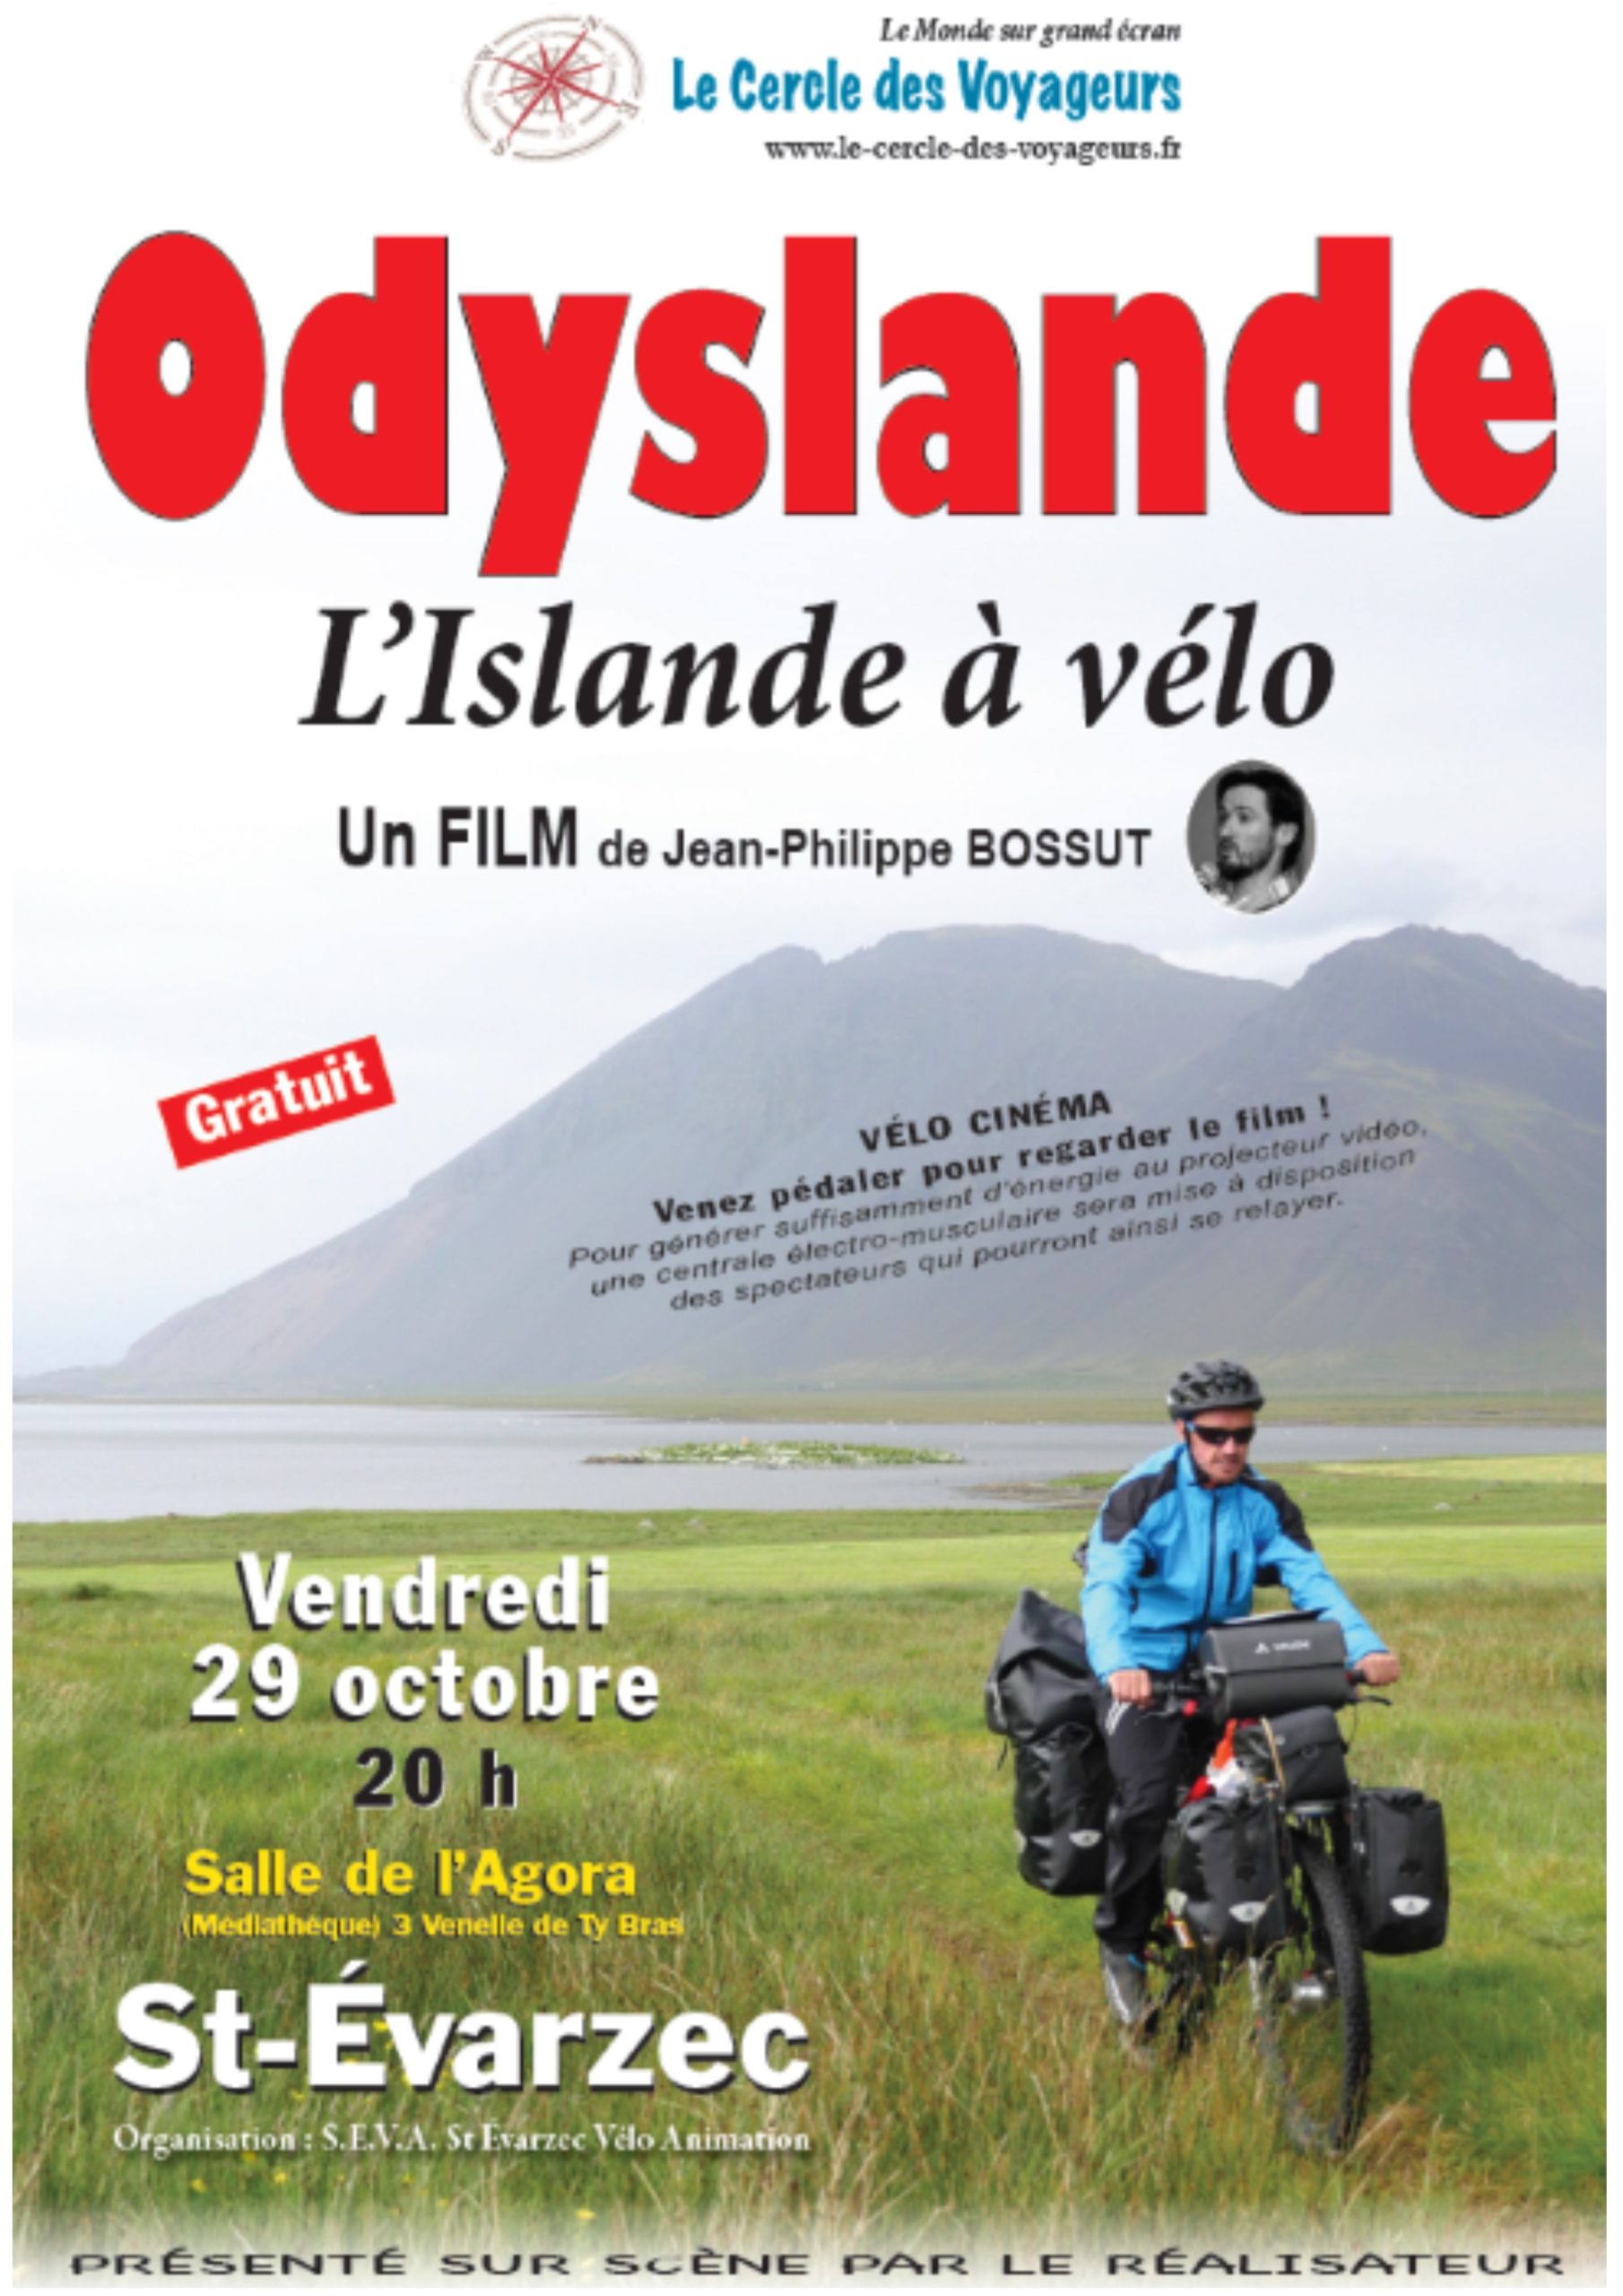 Odyslande "L'Islande à vélo" . Un film de Jean-Philippe BOSSUT.